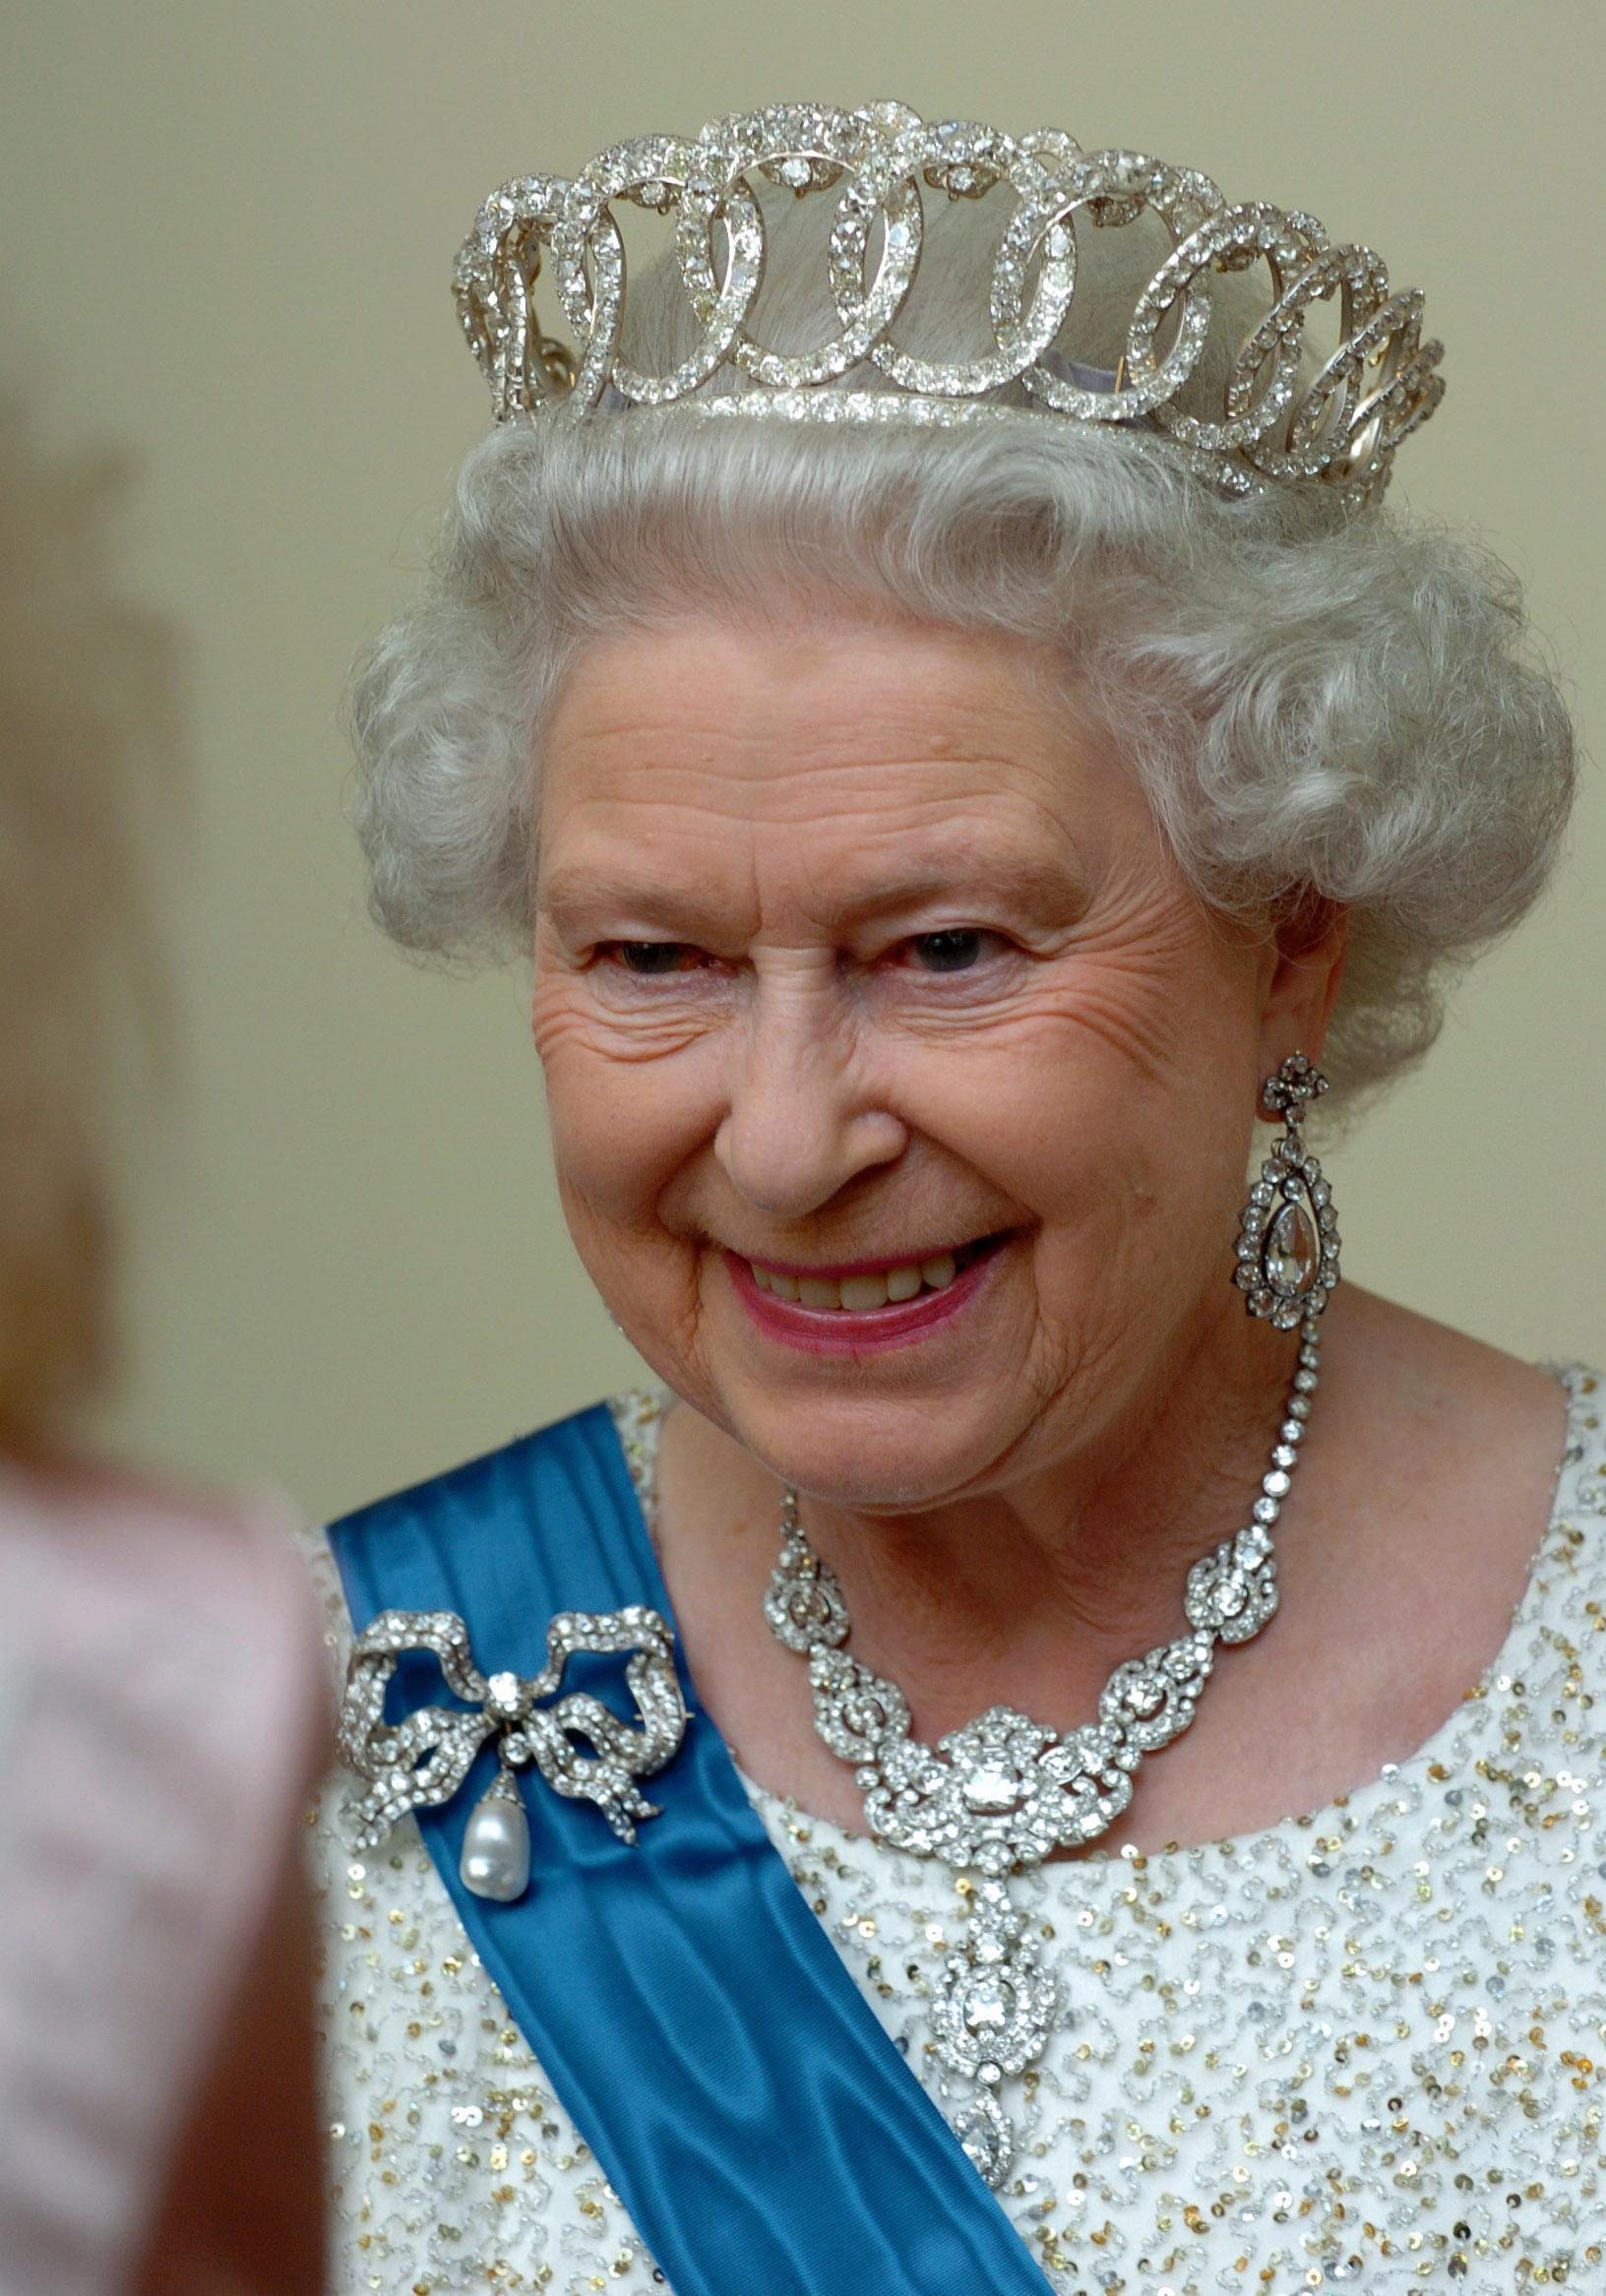 Royalty - Queen Elizabeth II State Visit to Estonia